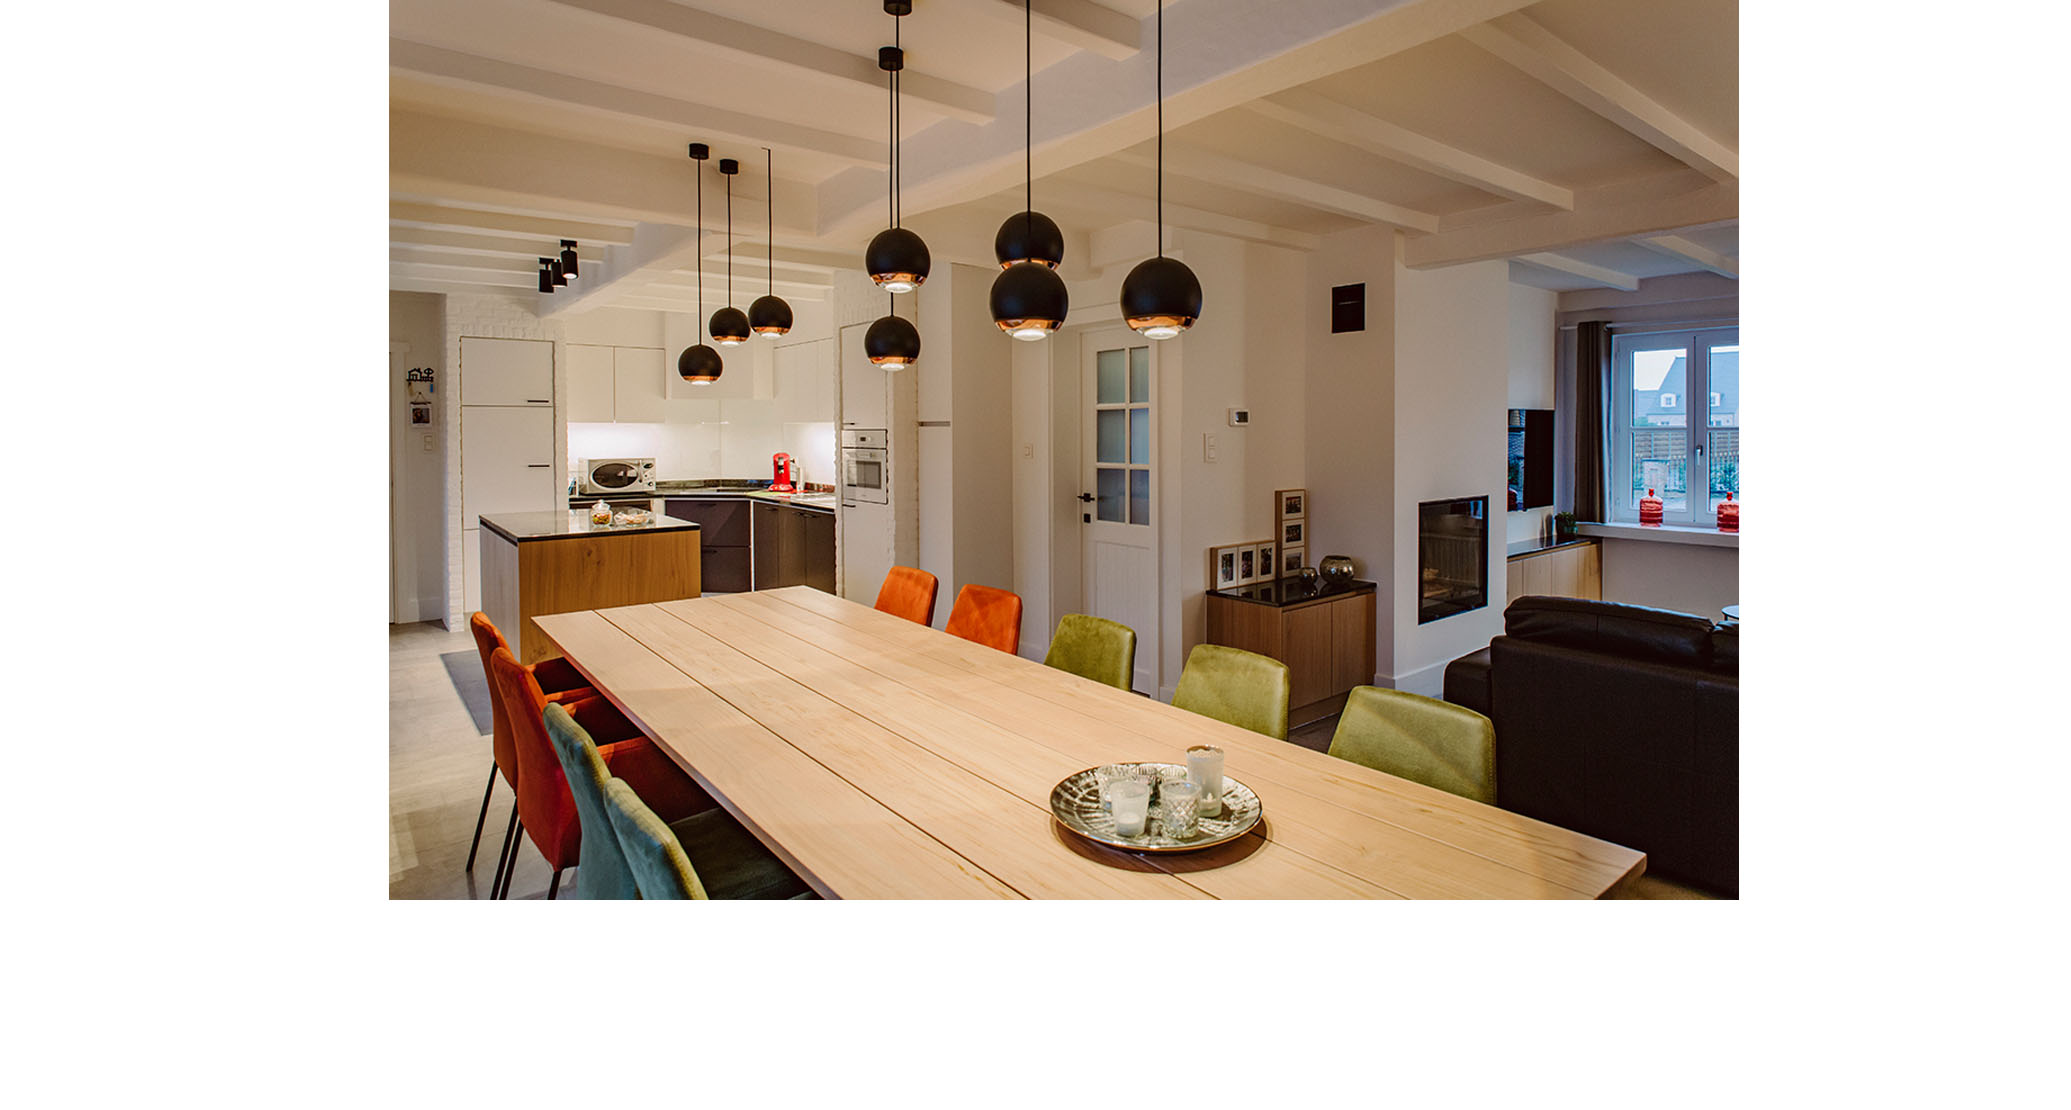 Dessel modern hout zithoek haard eethoek keuken graniet zwart zimbabwe latjes plafond landelijk kleur speelse verlichting